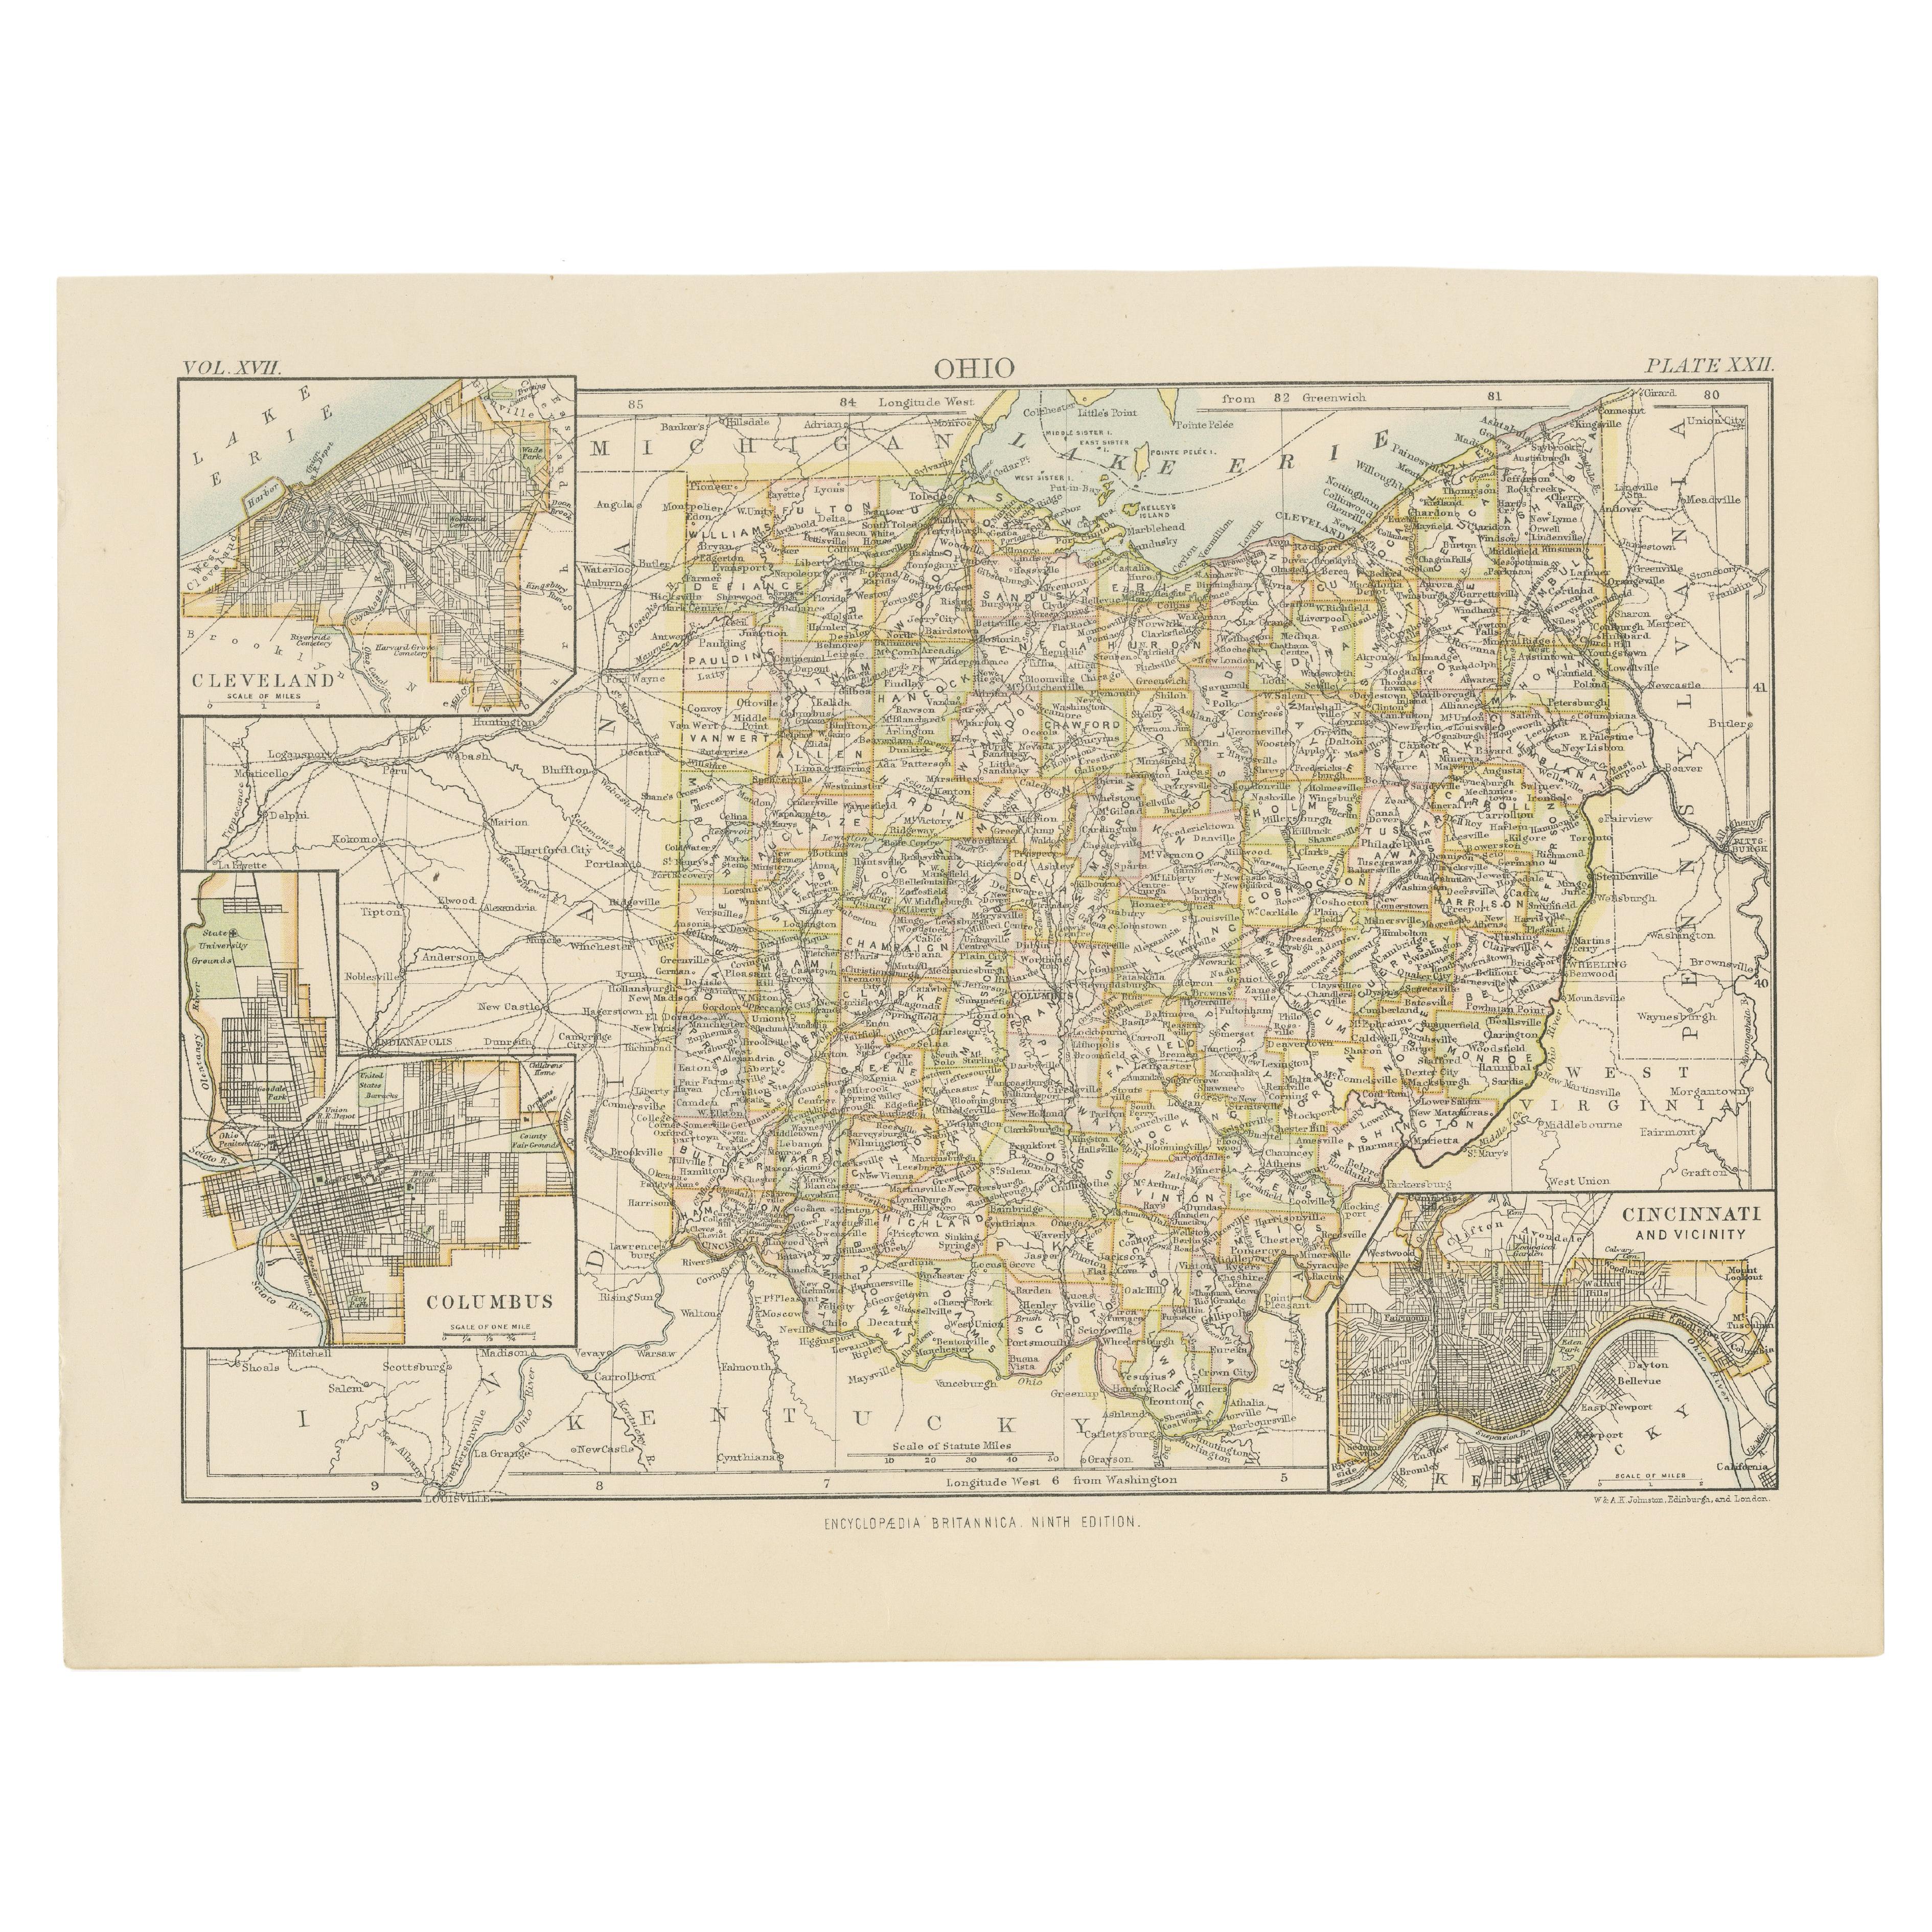 Antike Karte von Ohio, mit eingelassenen Karten von Cleveland, Columbus und Cincinnati